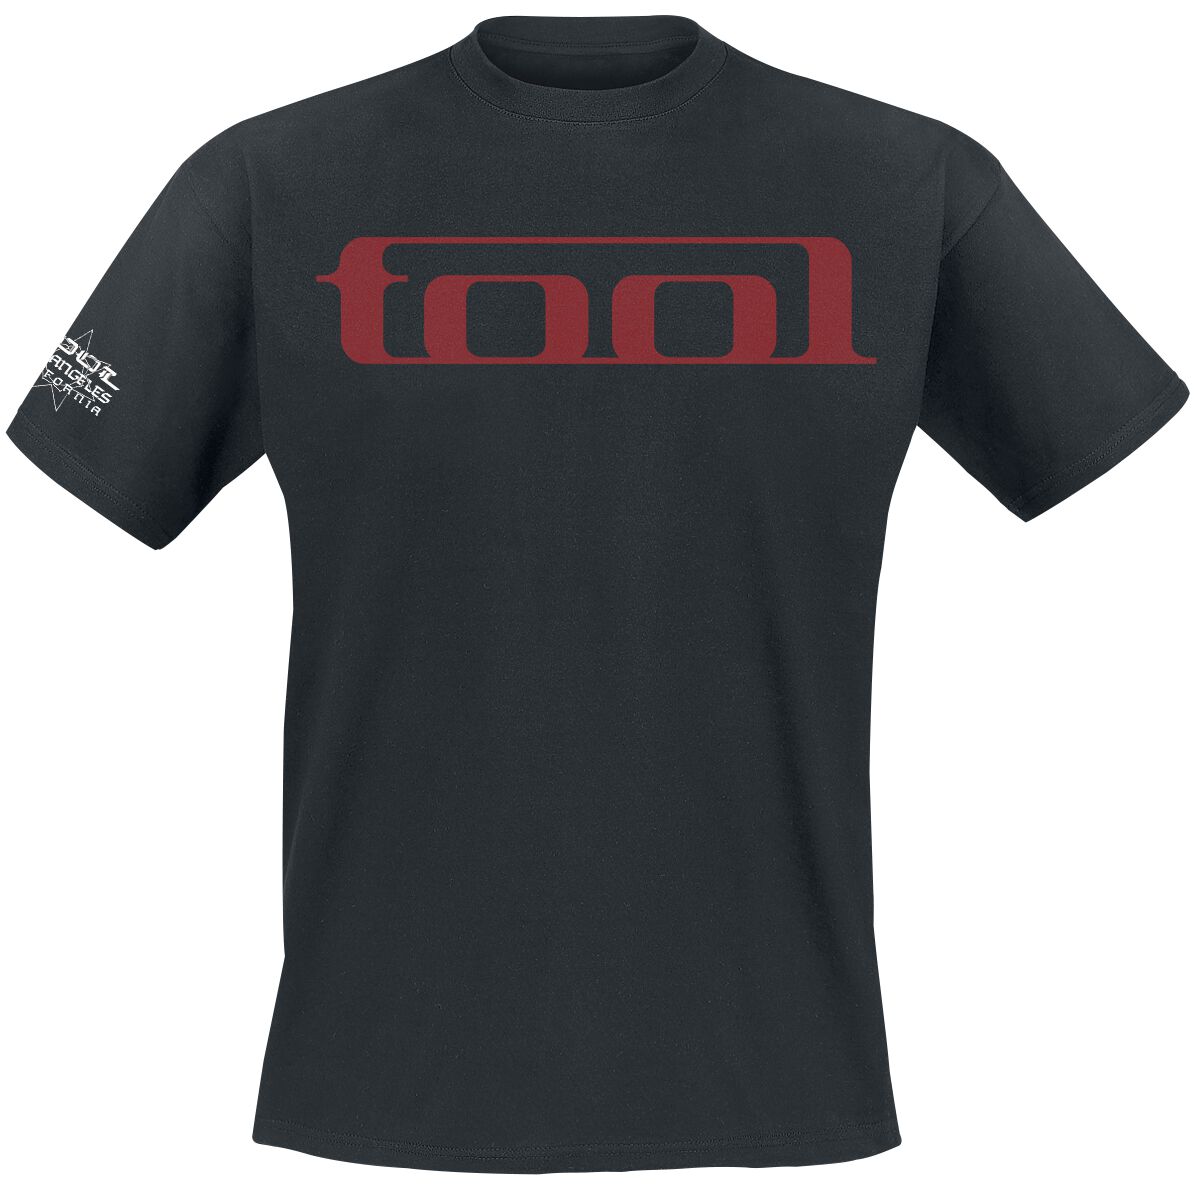 Tool T-Shirt - Undertow - S bis XXL - für Männer - Größe S - schwarz  - Lizenziertes Merchandise!